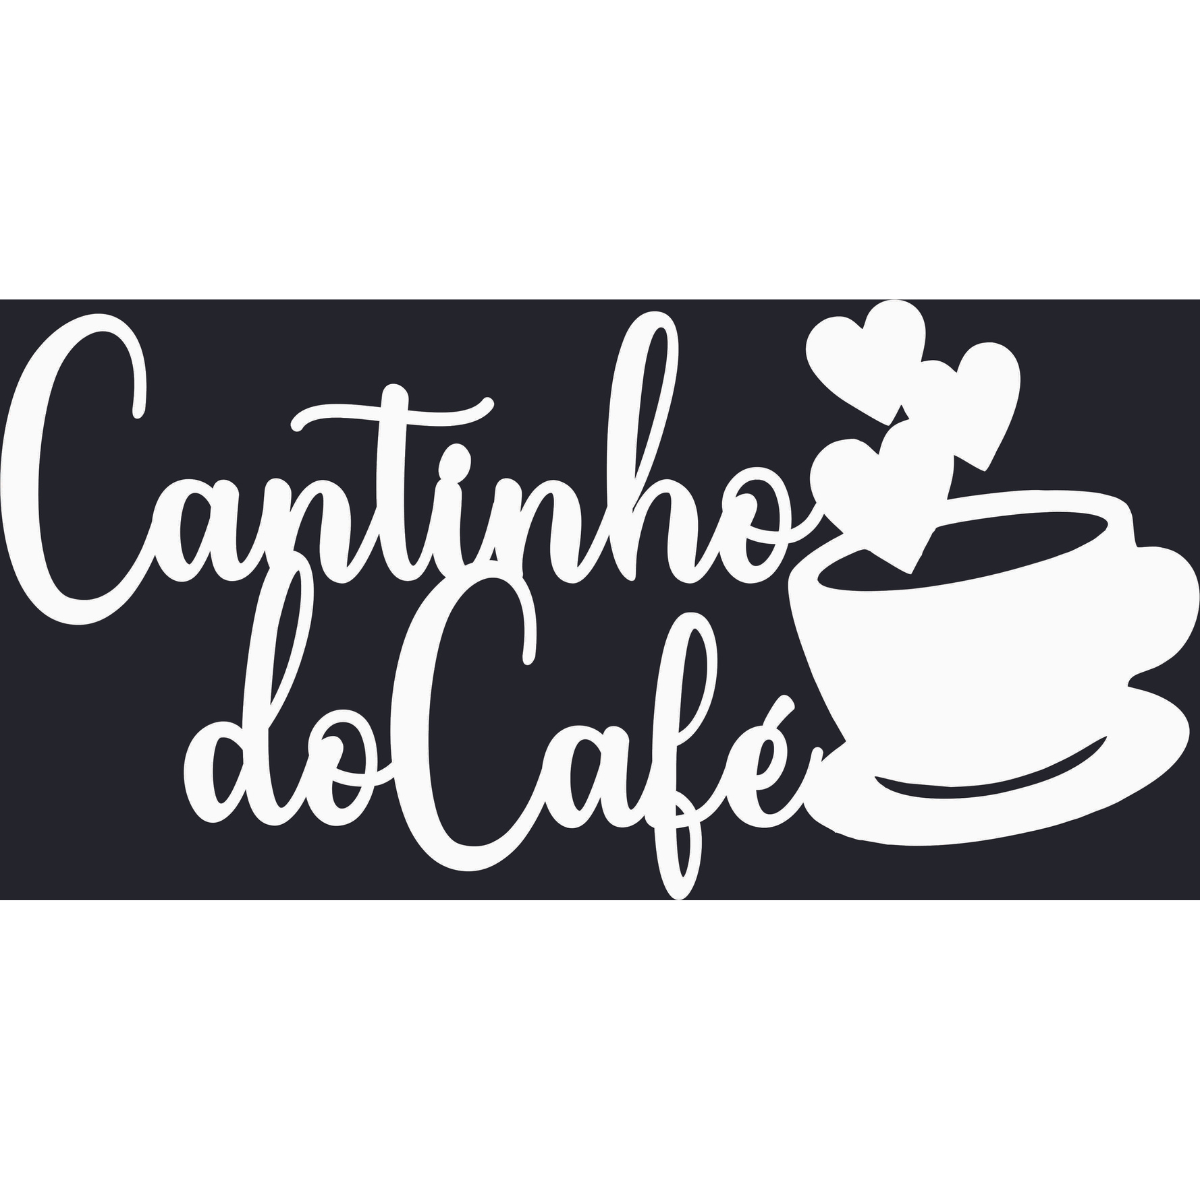 Cantinho do Cafe - Xícara - Decorativo - MDF - Branco - Escrita Placa Aplique - 15x30cm